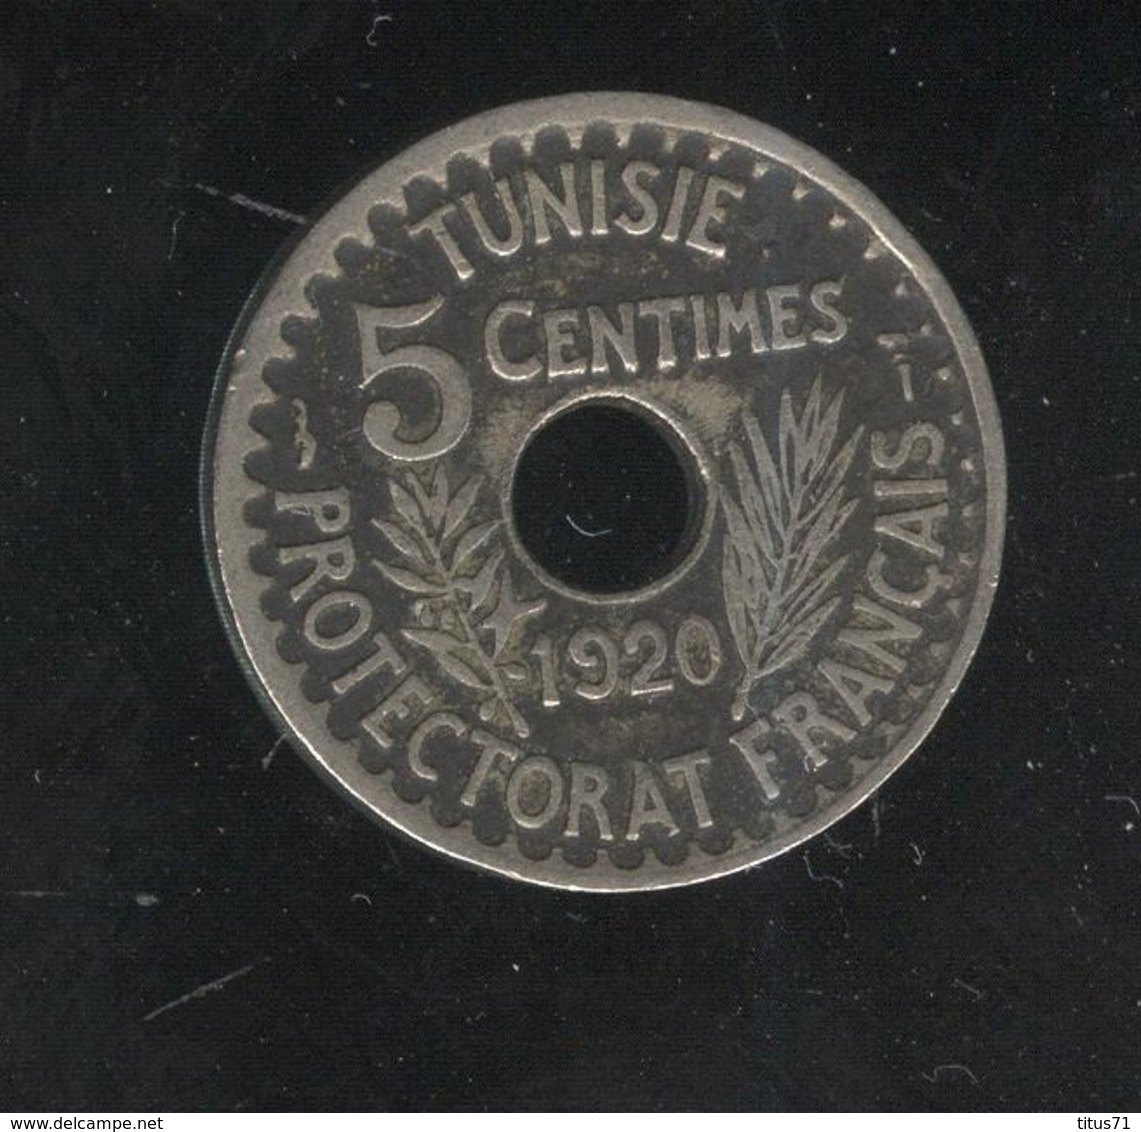 5 Centimes Tunisie 1920 Grand Module Protectorat Français - Tunisie